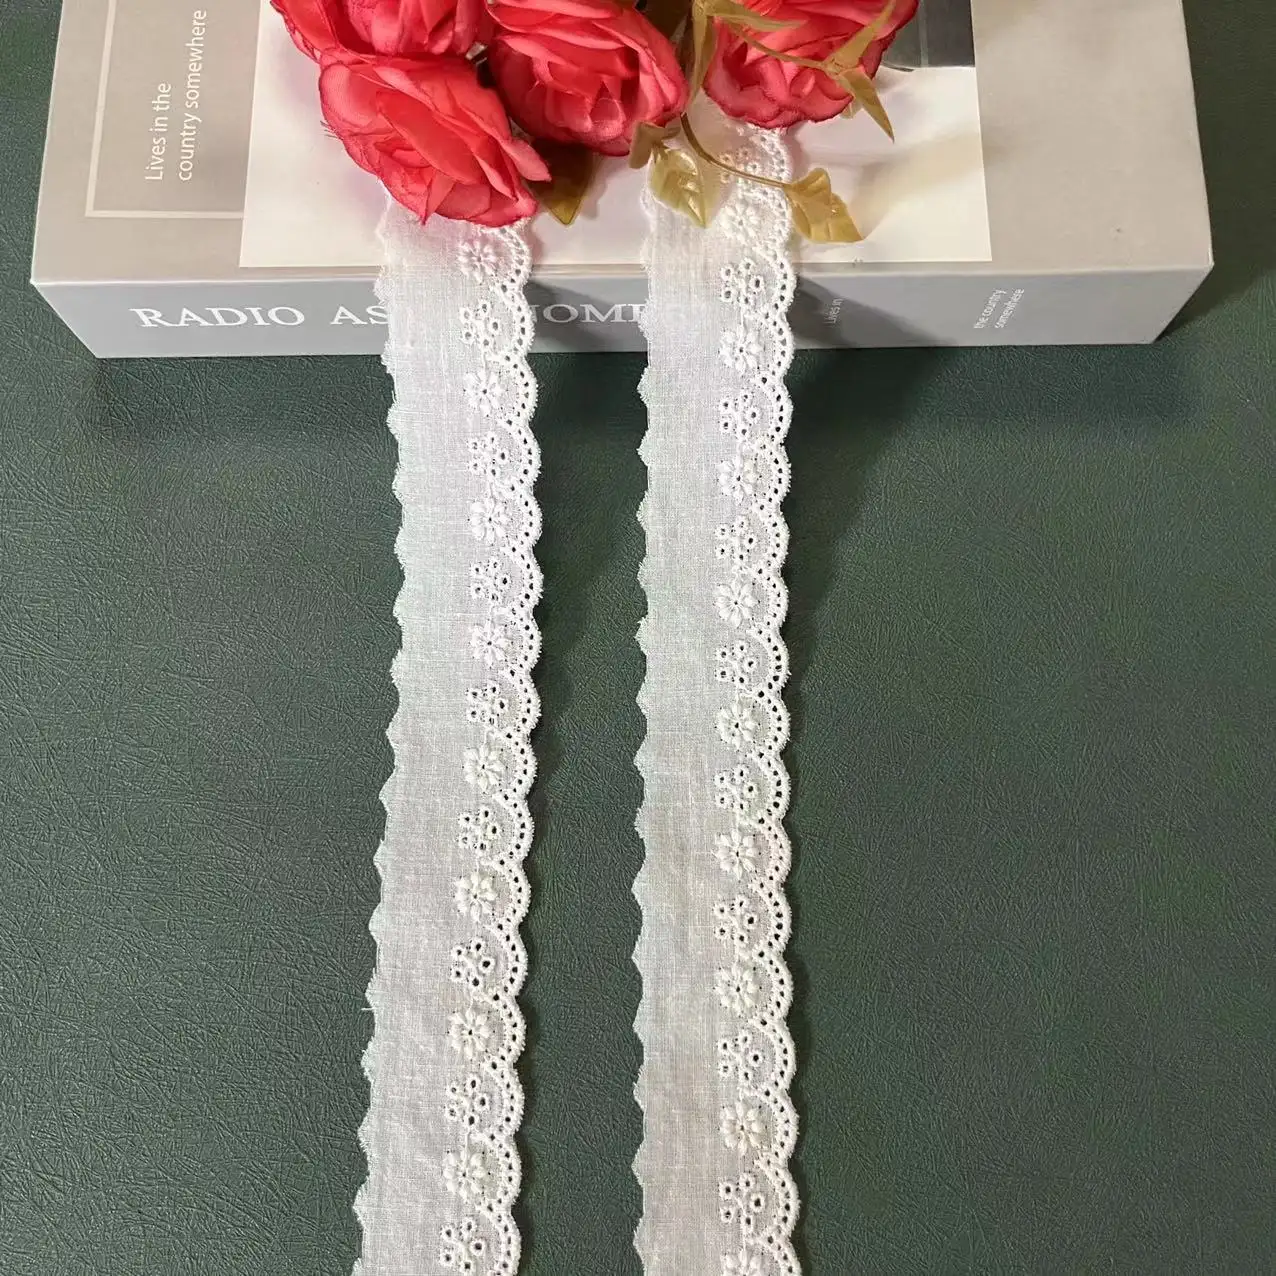 Hochwertiger Luxus Neues Design Flower Border Elfenbein Stickerei 100% Baumwolle Spitzen besatz Für Damen Dessous Kleid